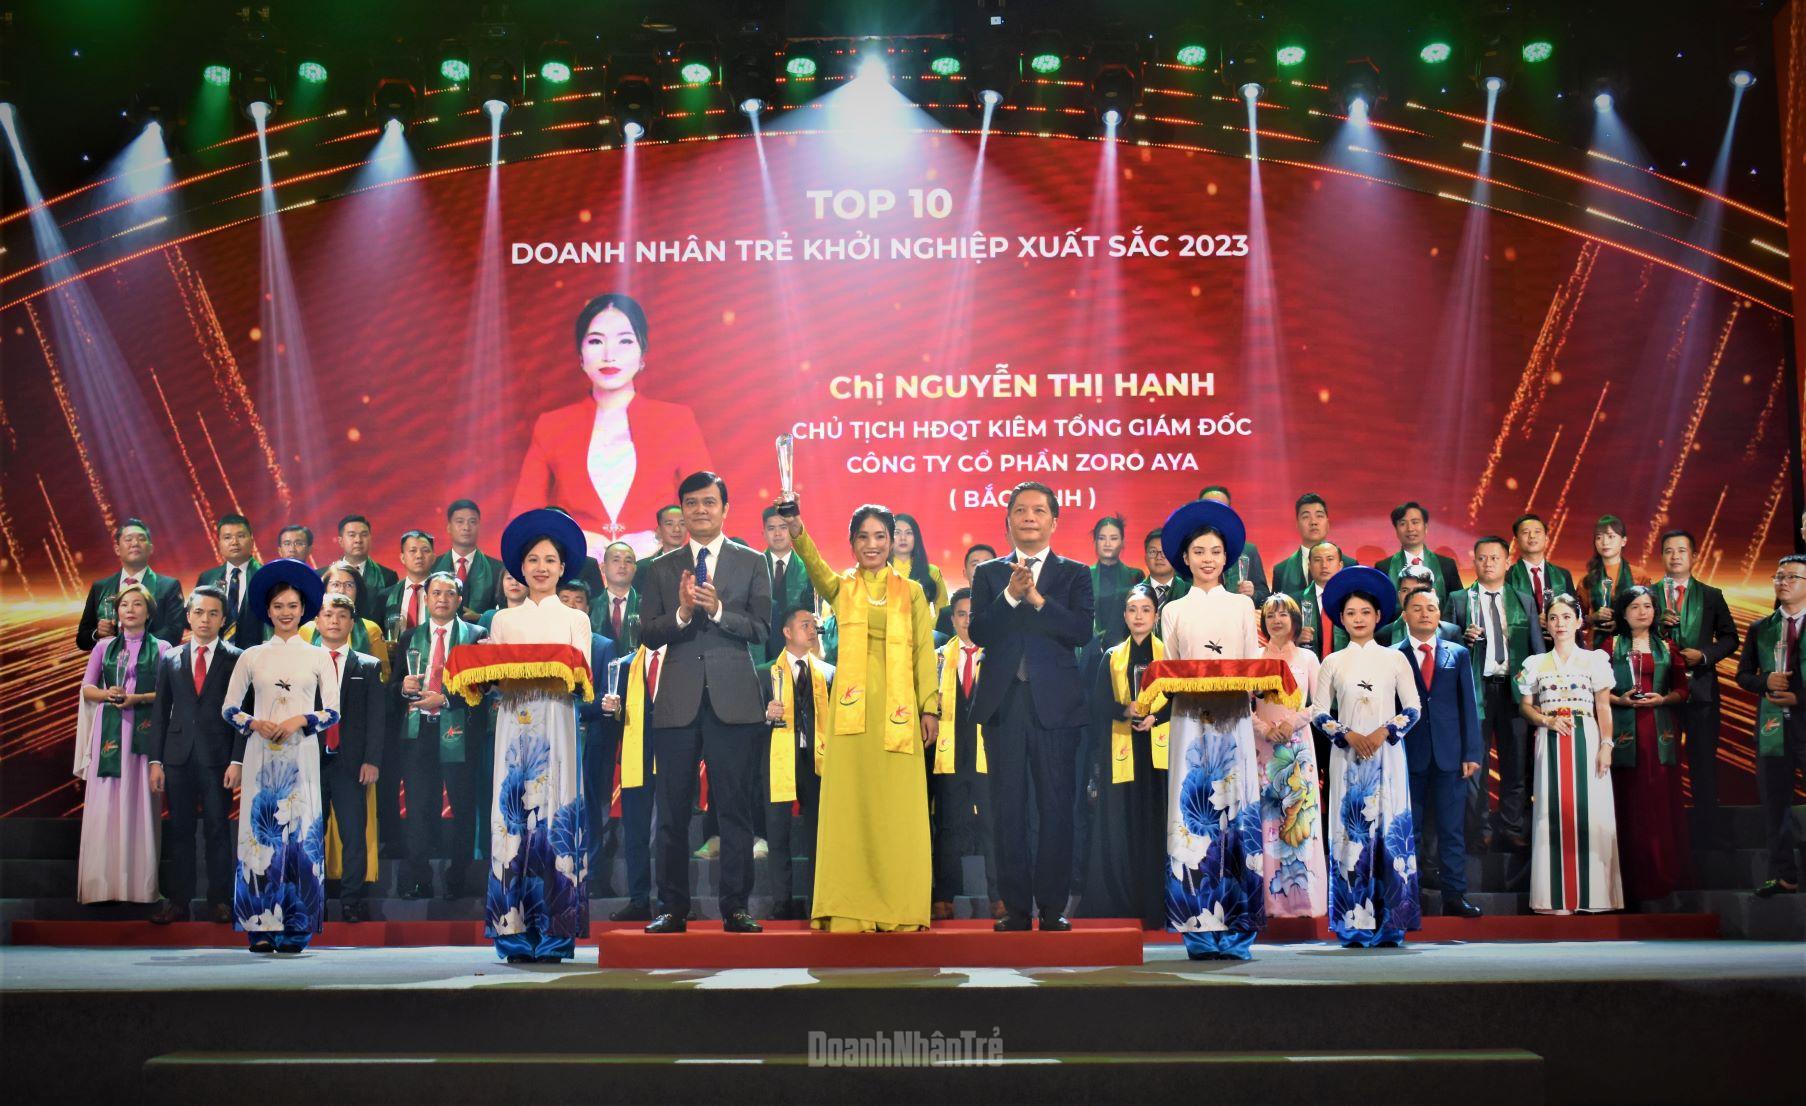 Ông Trần Tuấn Anh, Ủy viên Bộ Chính trị, Trưởng Ban Kinh tế Trung ương và ông Bùi Quang Huy, Bí thư thứ nhất T.Ư Đoàn trao tặng giải thưởng cho Top 10 Doanh nhân trẻ khởi nghiệp xuất sắc 2023. 